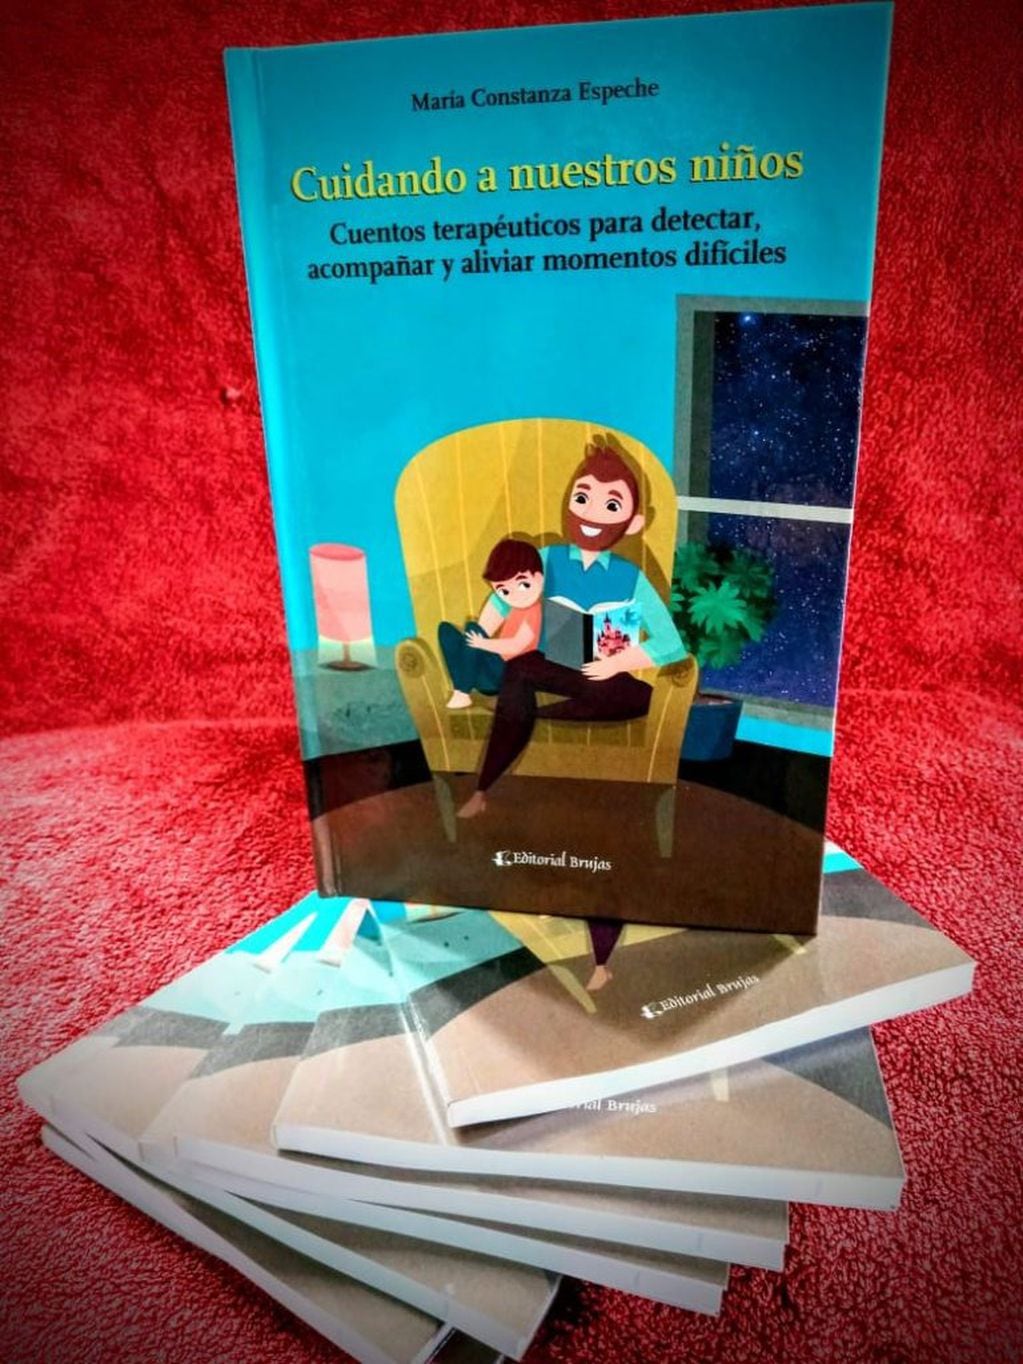 Libro "Cuidando a nuestros niños", de María Constanza Espeche.